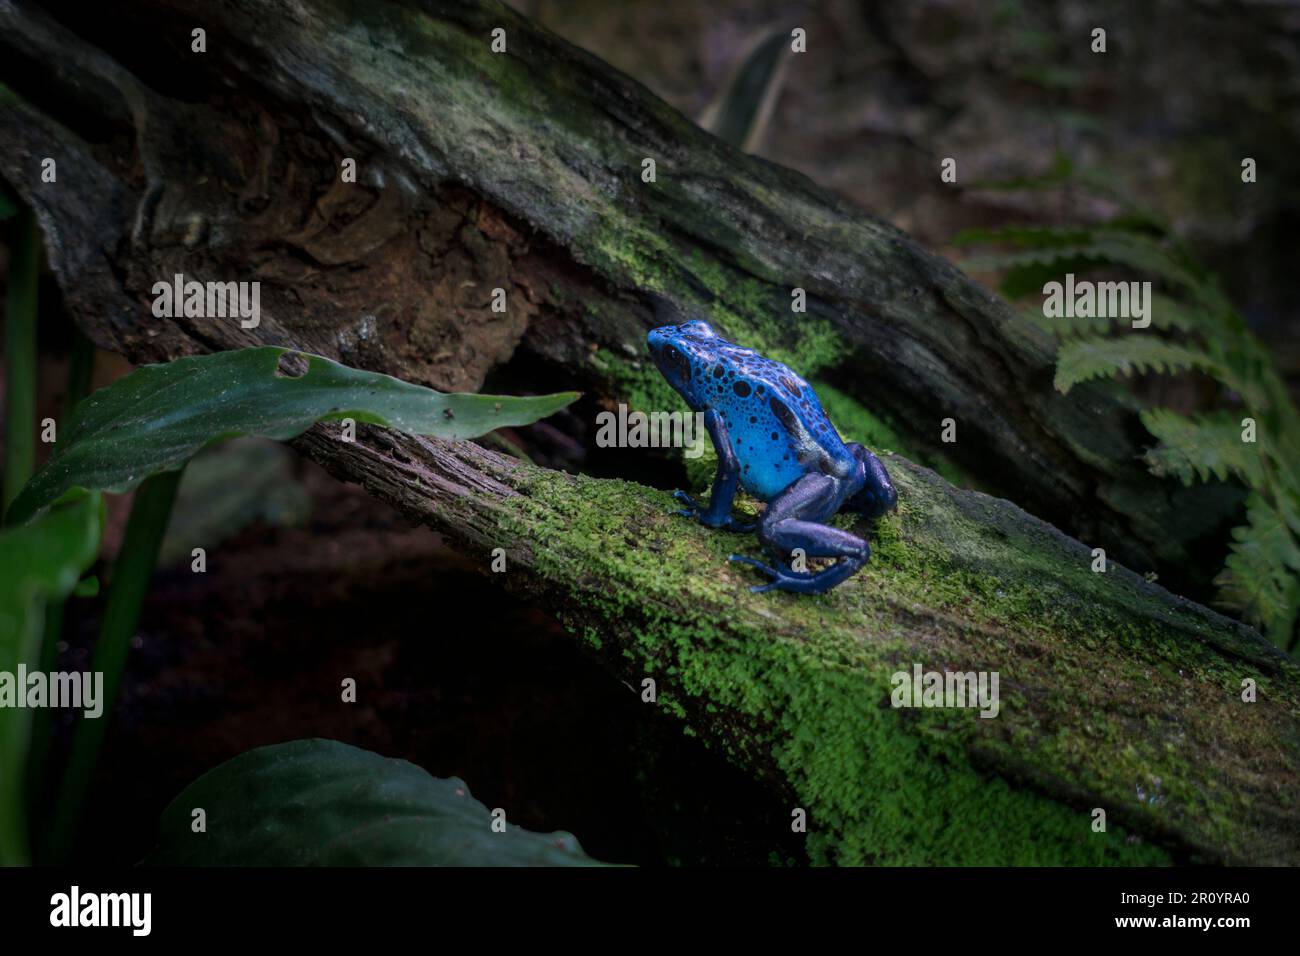 Rana di cervo blu / rana di cervo blu (Dendrobates tinctorius azureus) originaria delle foreste pluviali del sud del Suriname e del nord del Brasile Foto Stock